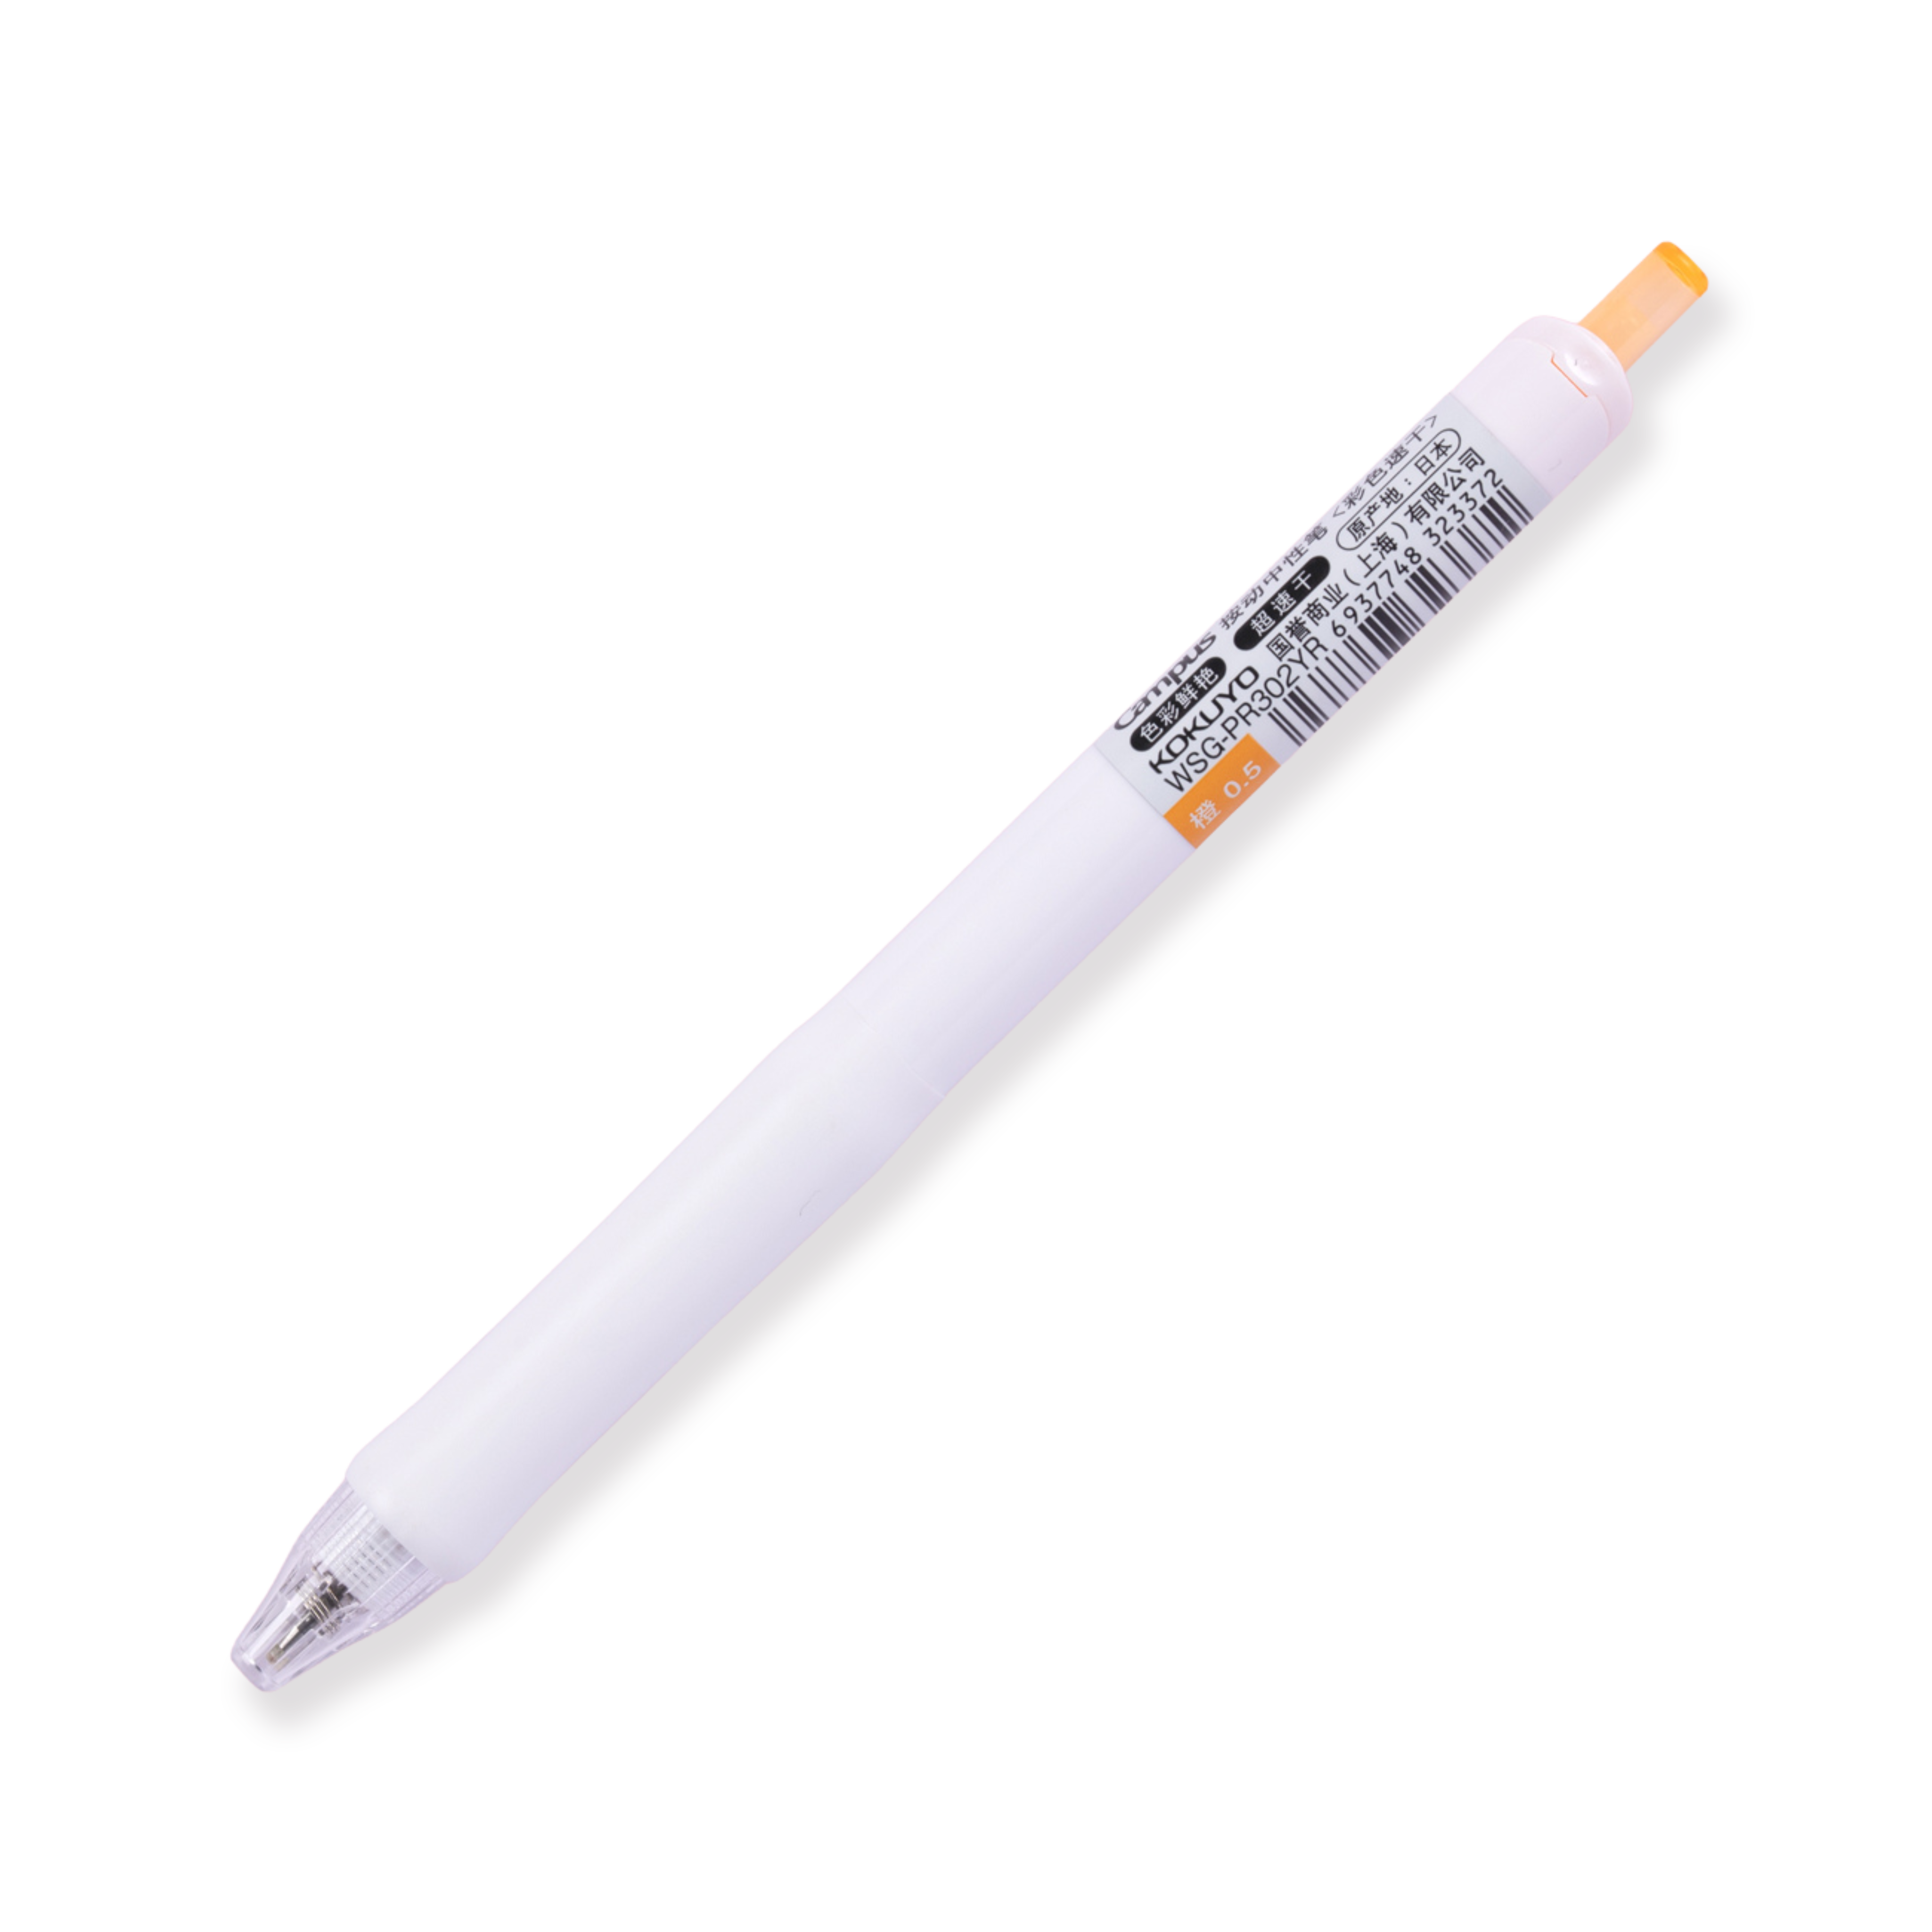 Kokuyo Campus viviDRY Retractable Gel Pen - 0.5 mm - Orange